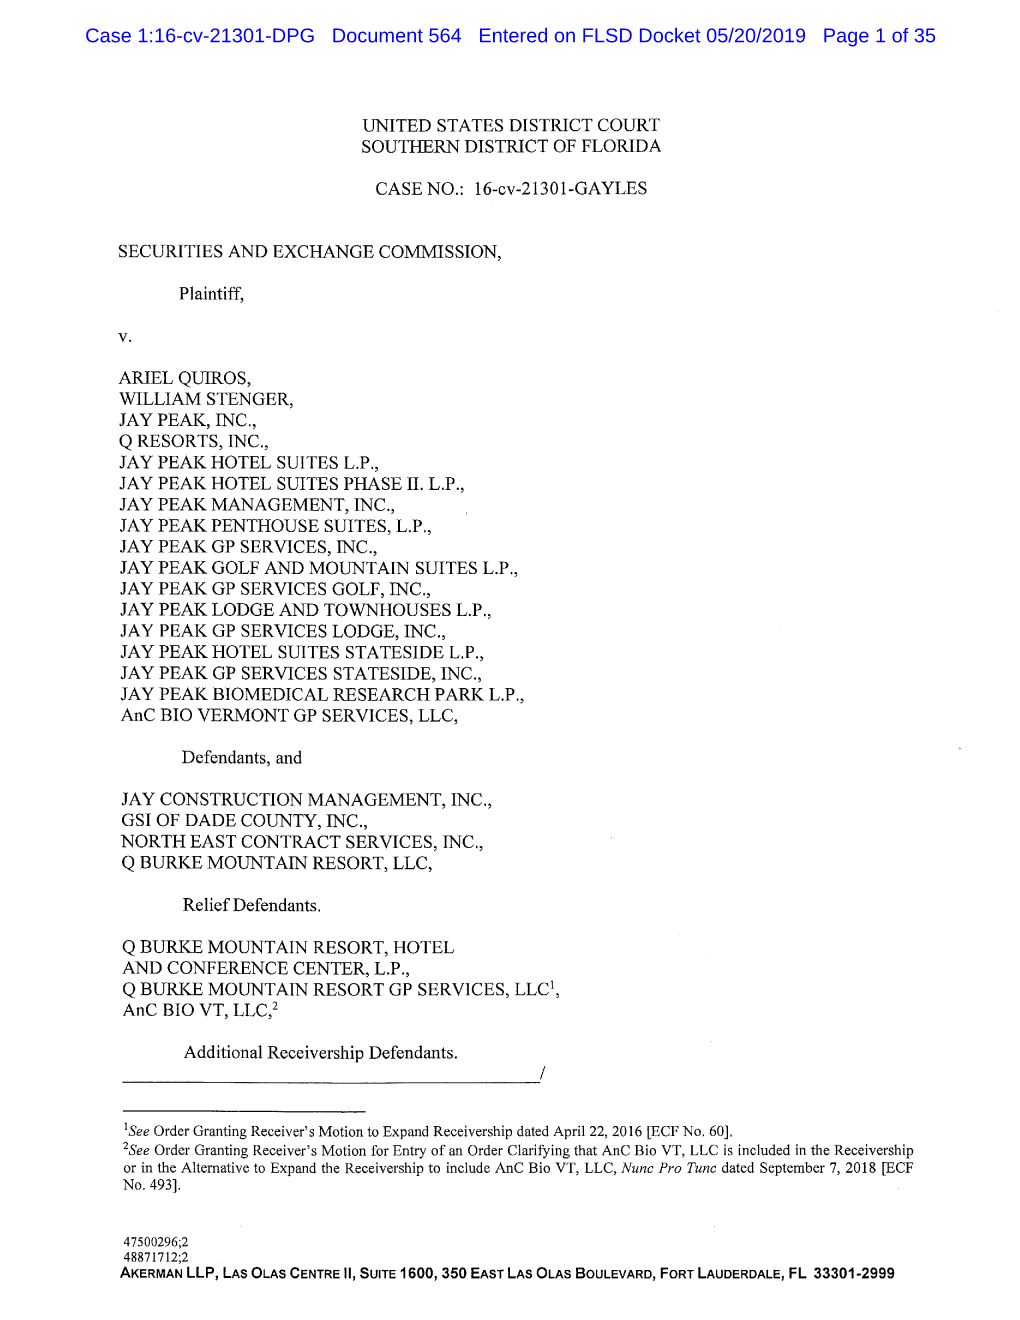 Case 1:16-Cv-21301-DPG Document 564 Entered on FLSD Docket 05/20/2019 Page 1 of 35